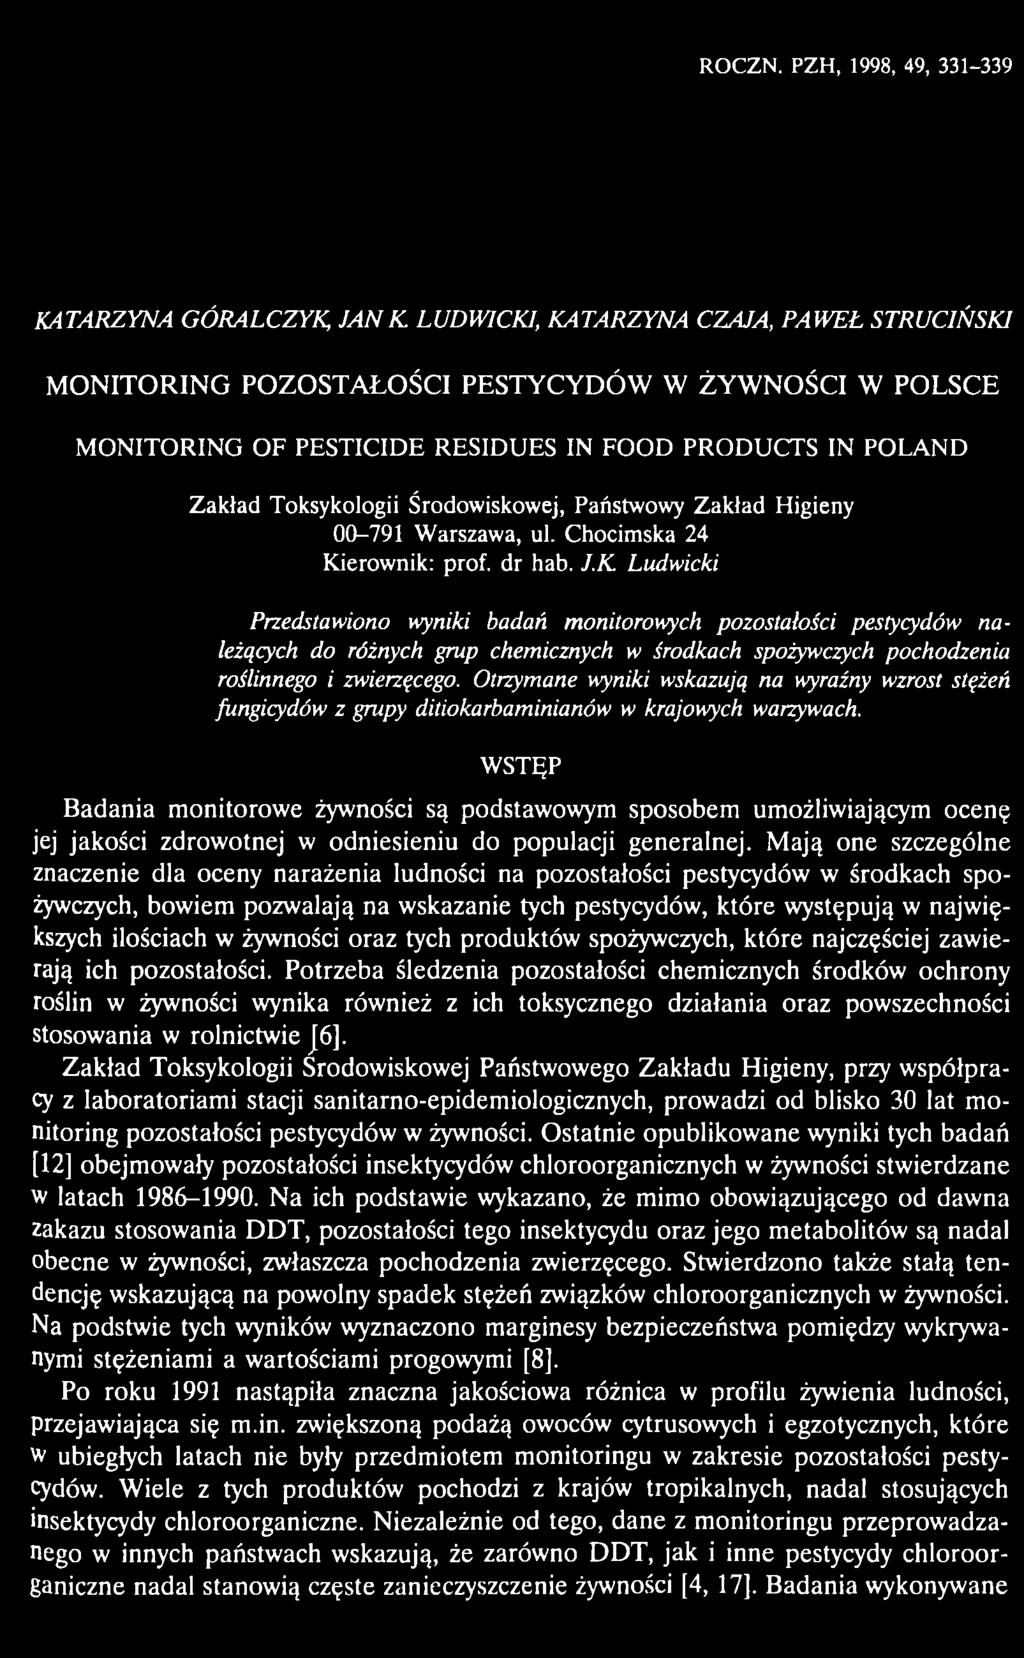 IN FOOD PRODUCTS IN POLAND Zakład Toksykologii Środowiskowej, Państwowy Zakład Higieny 00-791 Warszawa, ul. Chocimska 24 Kierownik: prof. dr hab. J.